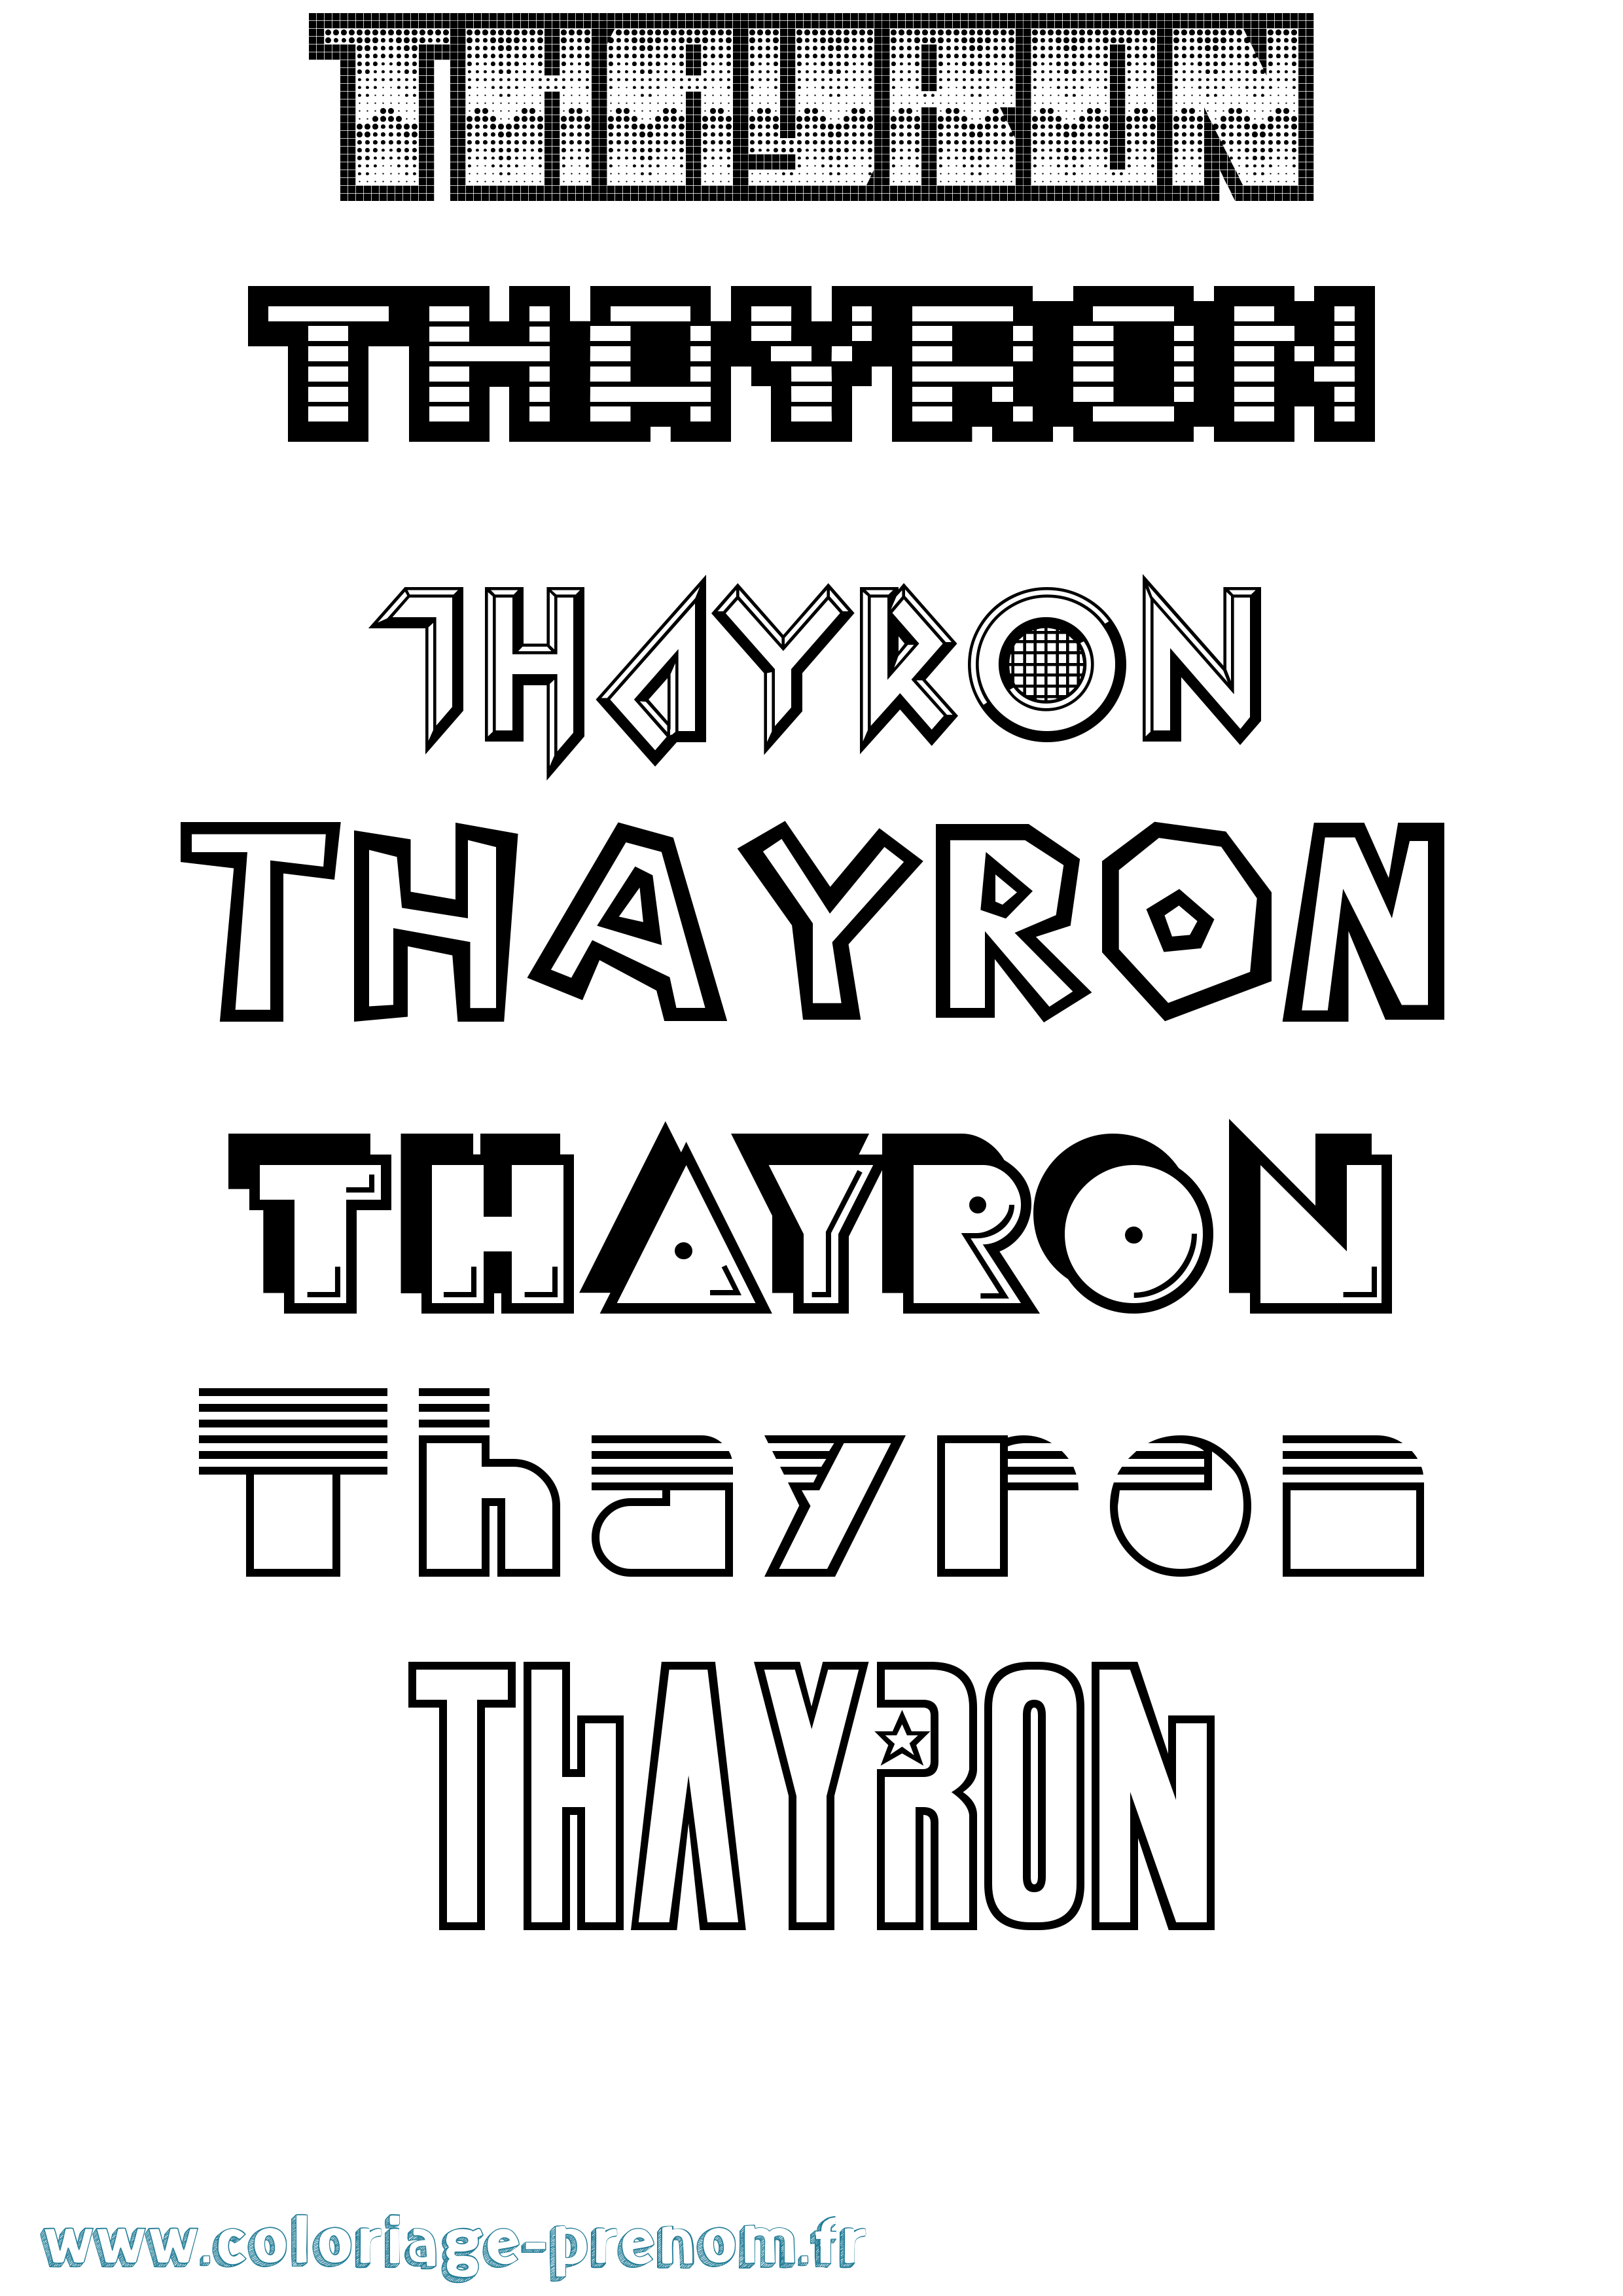 Coloriage prénom Thayron Jeux Vidéos